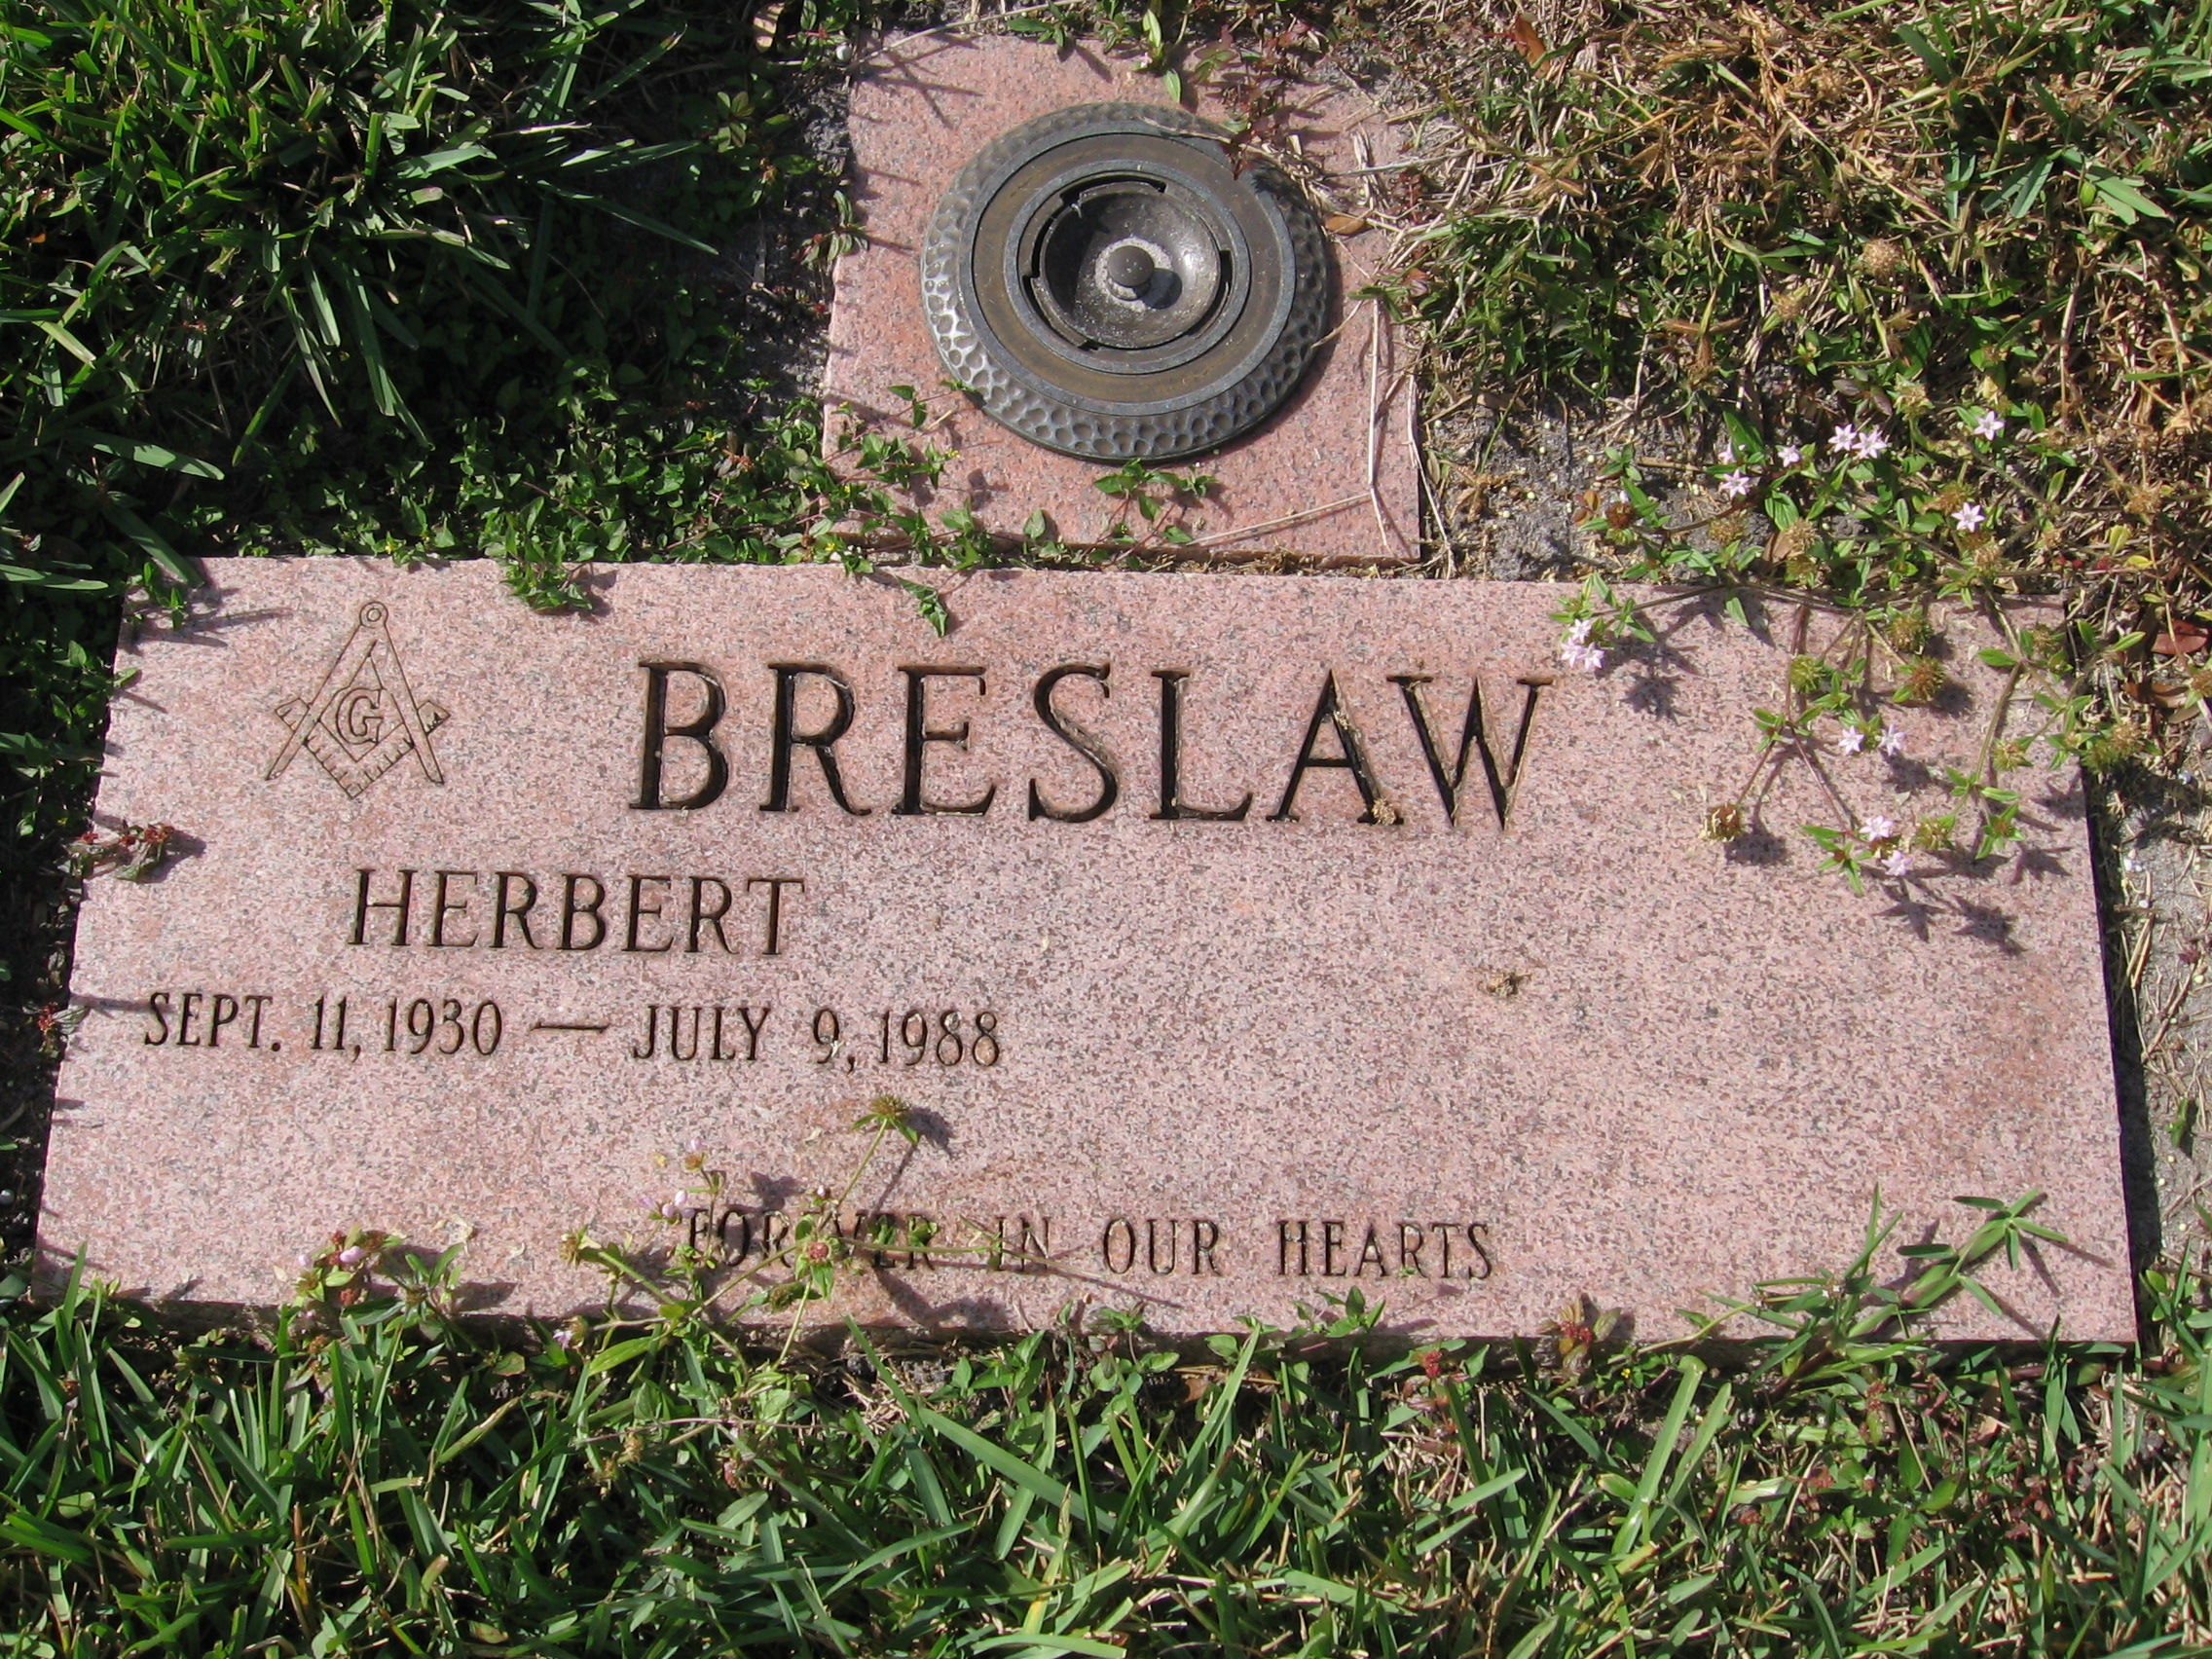 Herbert Breslaw